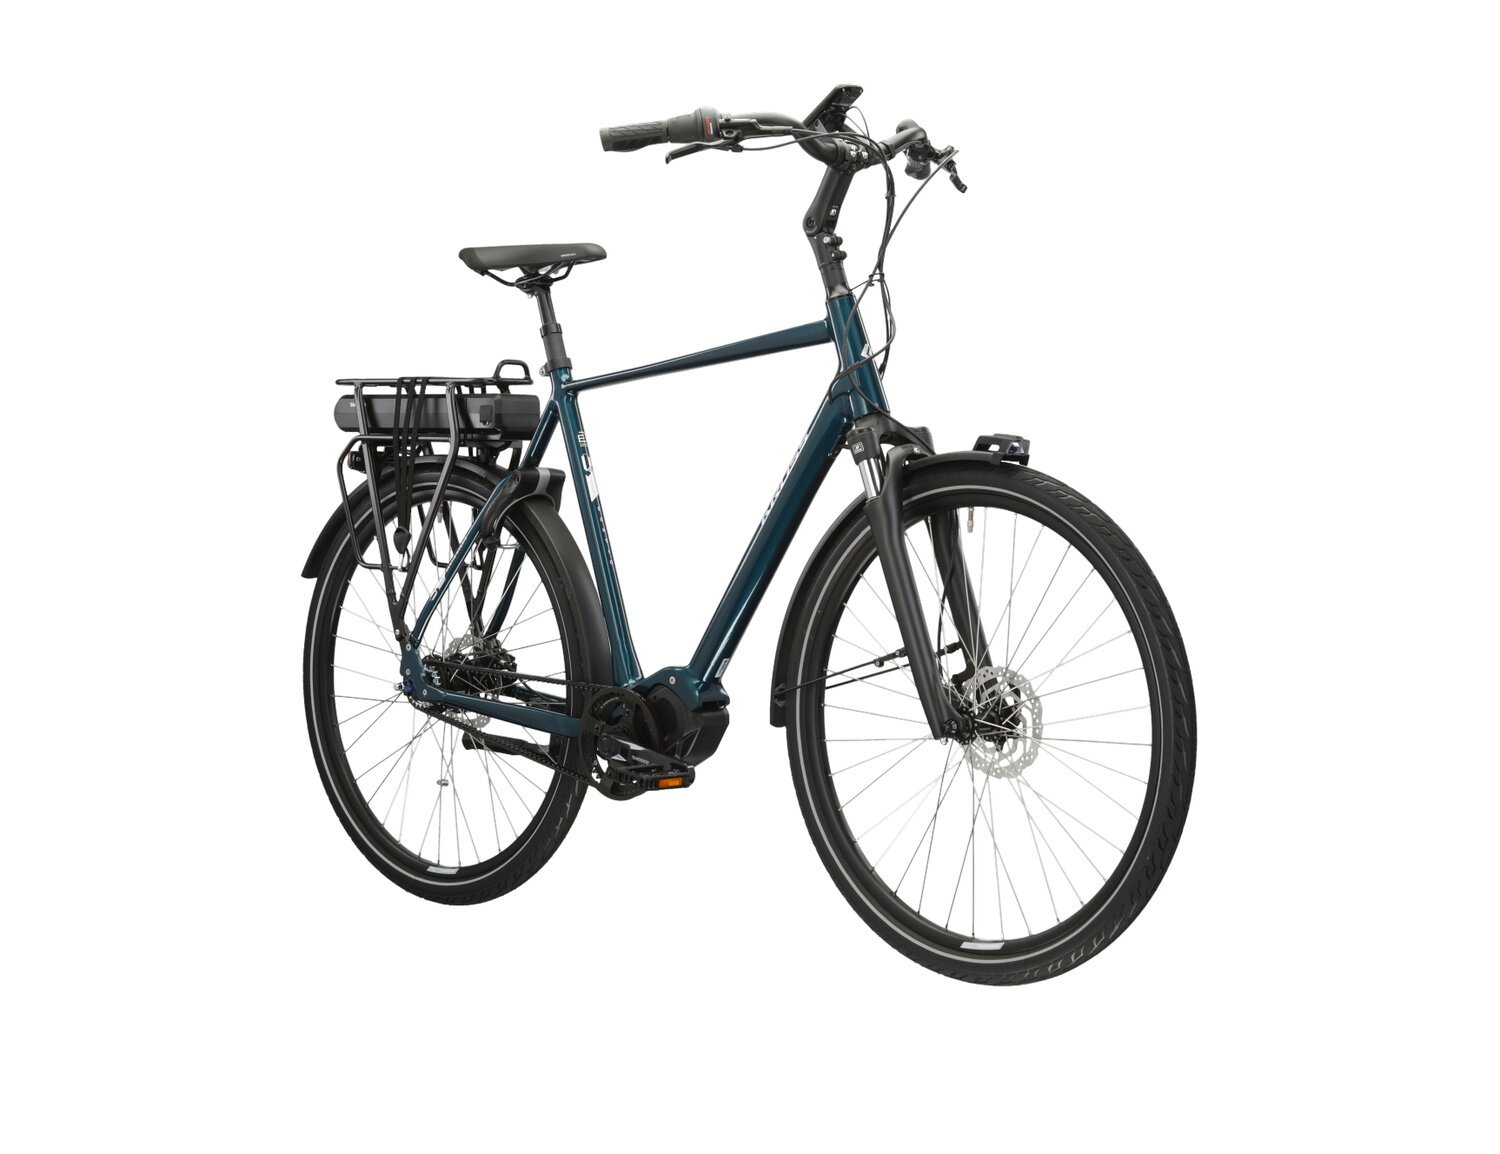  Elektryczny rower miejski Ebike City KROSS Sentio Hybrid 5.0 504 Wh na aluminiowej ramie w kolorze turkusowym wyposażony w osprzęt shimano i napęd elektryczny Shimano